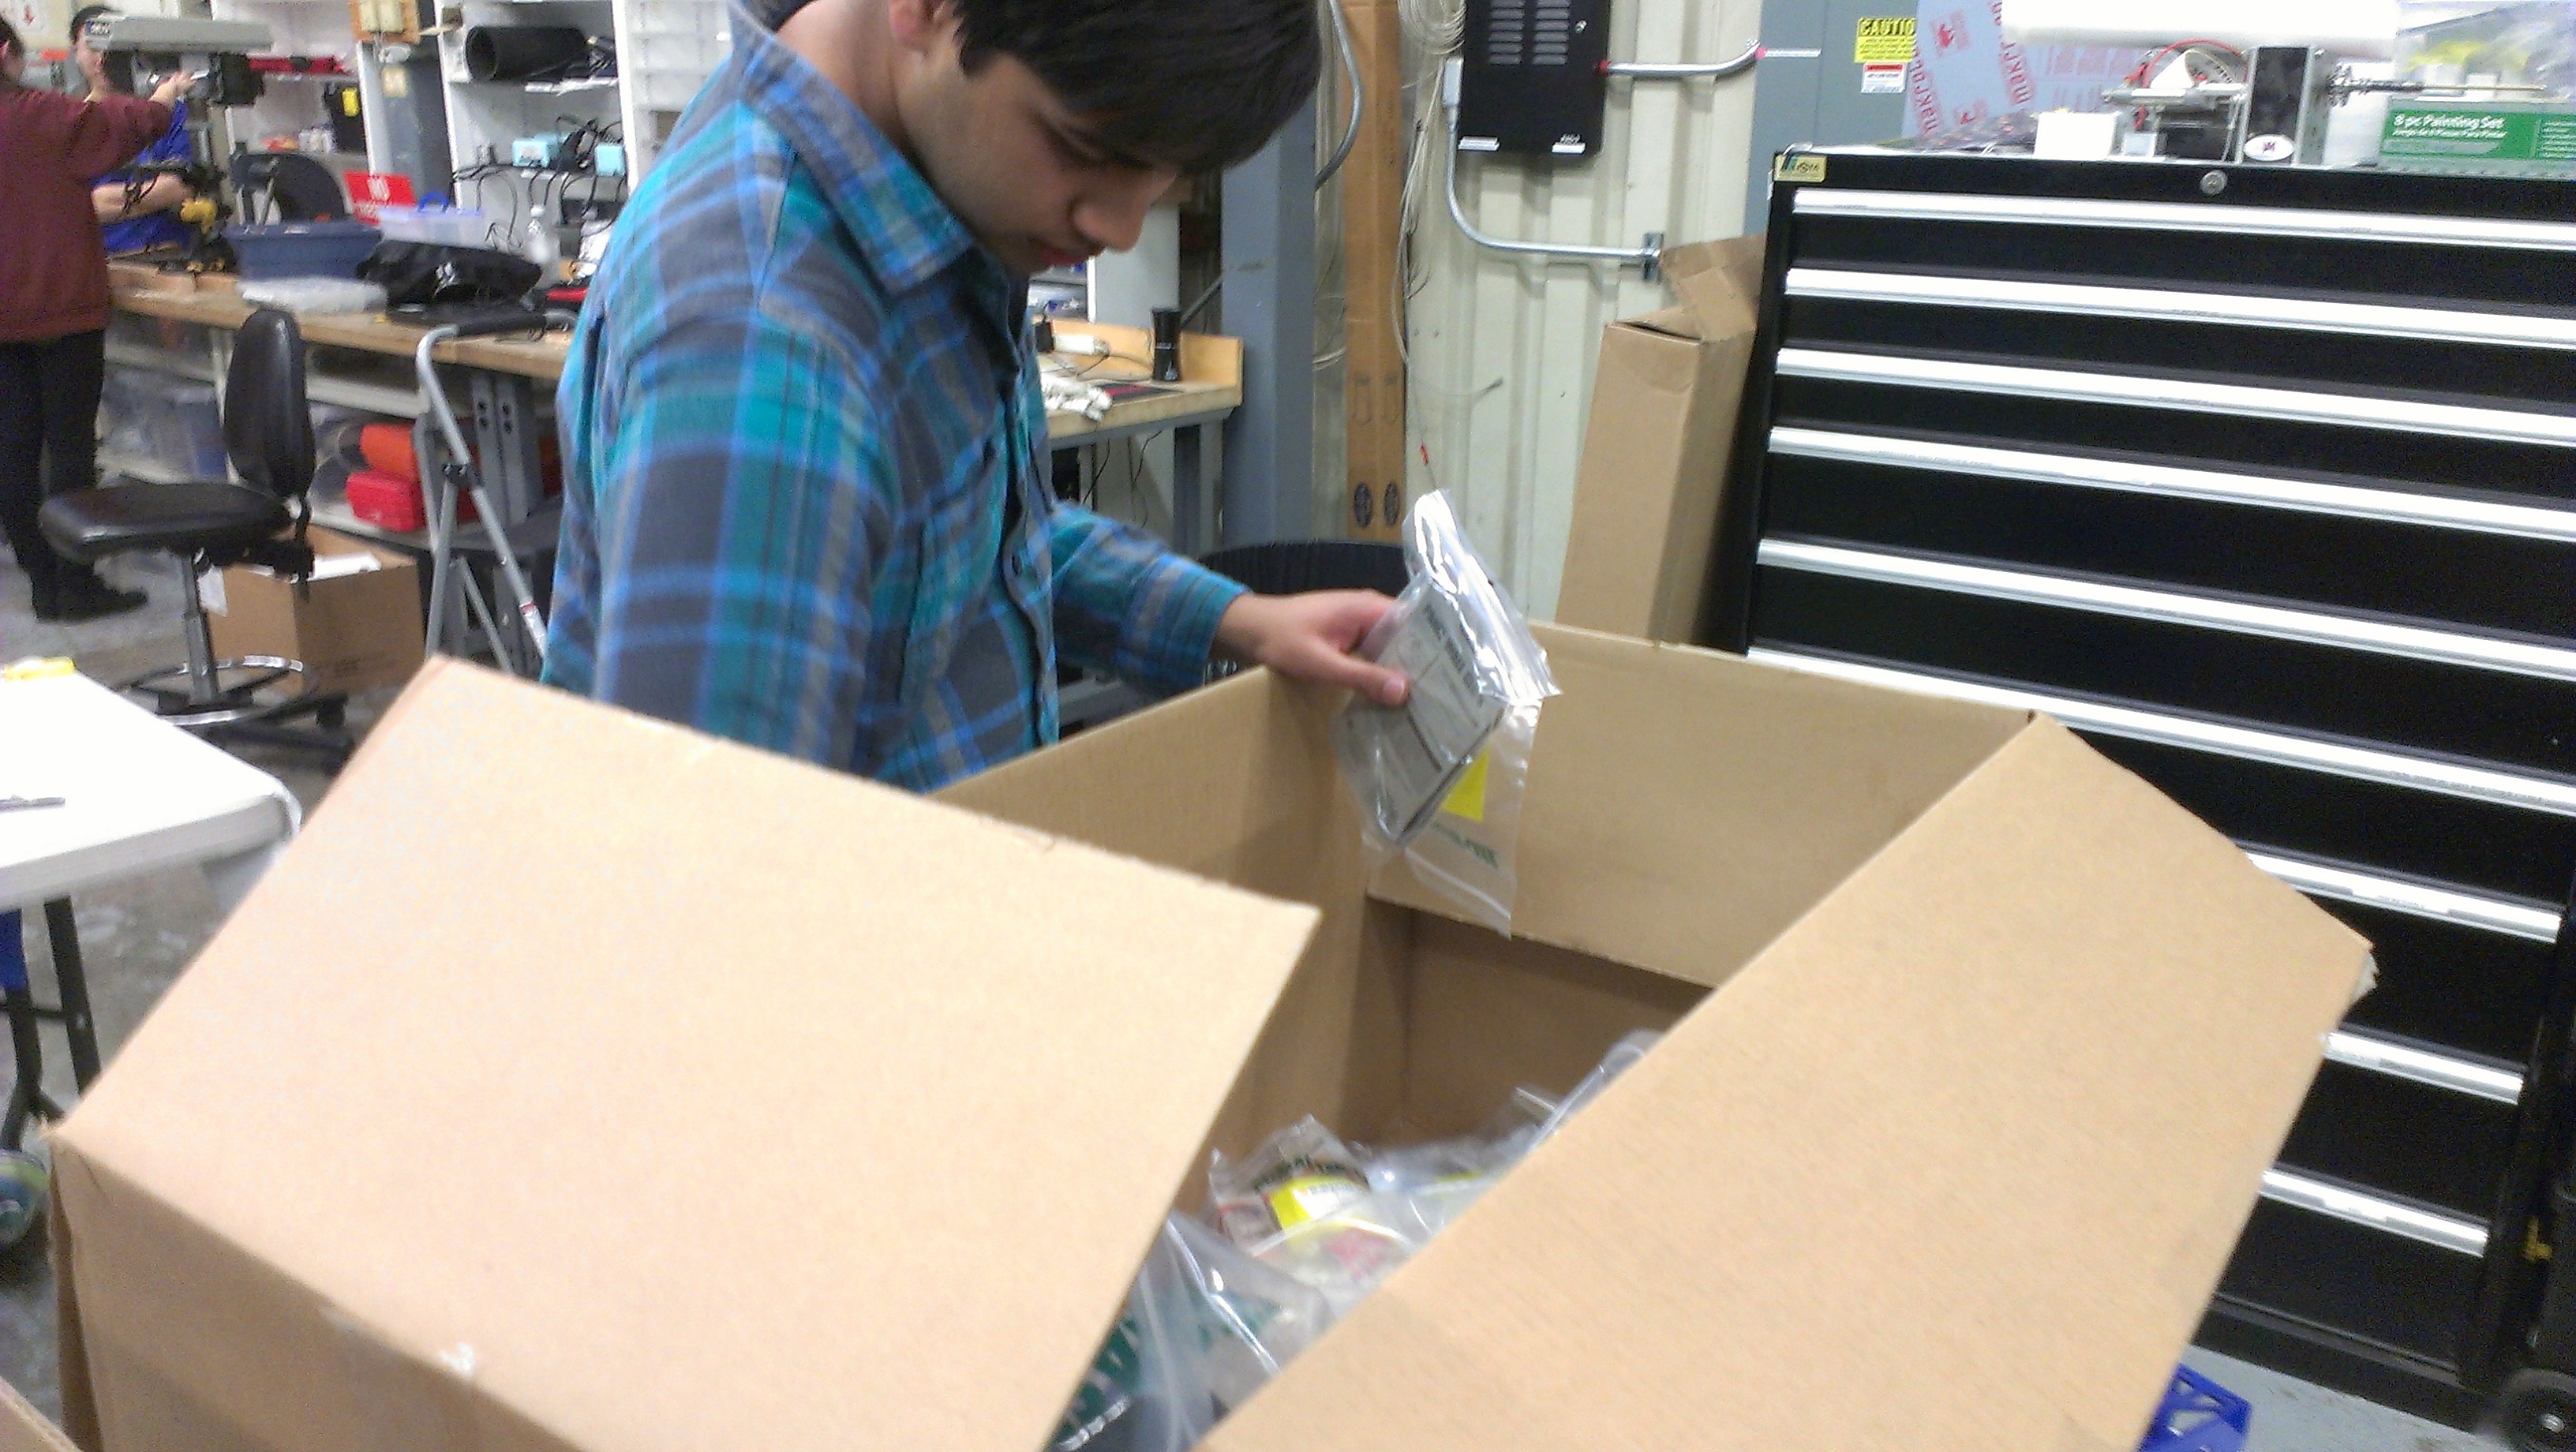 Mani examining the new shipment of equipment